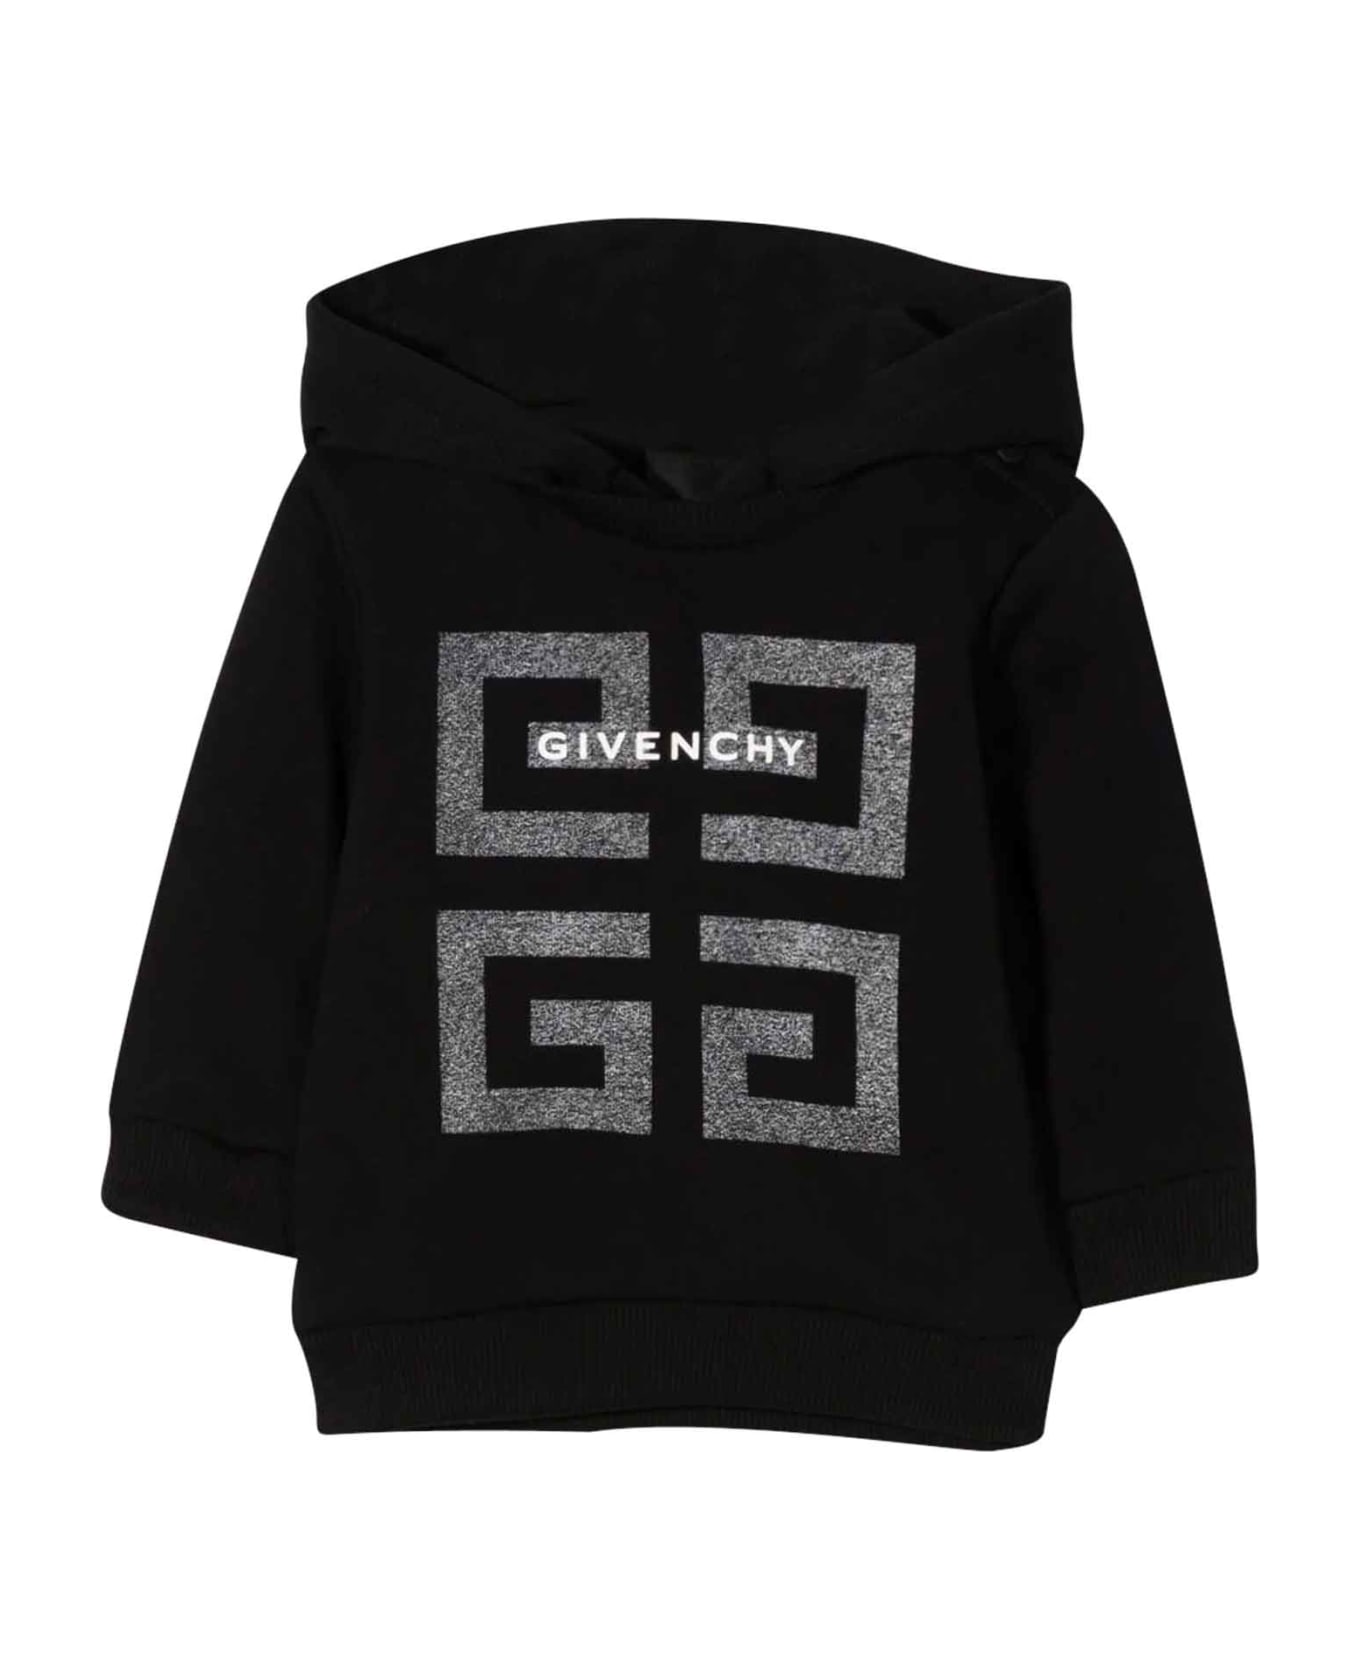 Givenchy Black Sweatshirt Baby Unisex - Nero